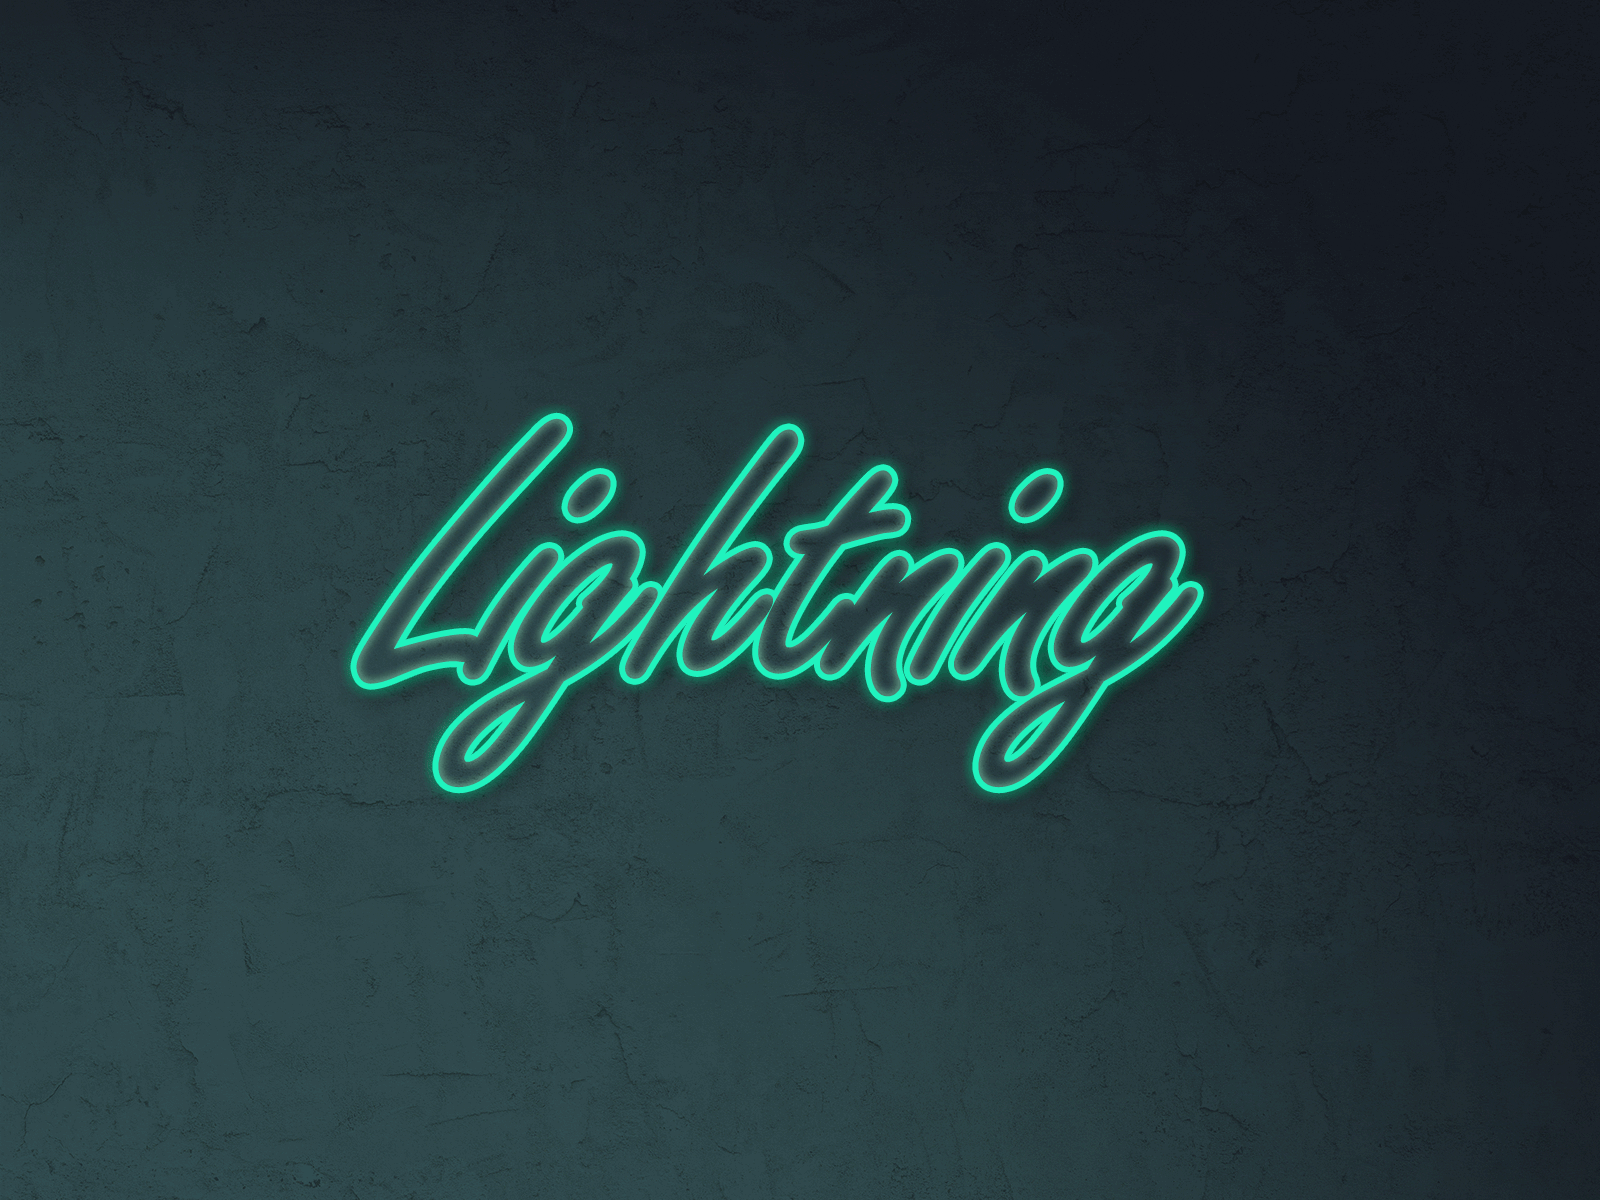 Lightning animation 2danimation animation design effect lightning neon photoshop